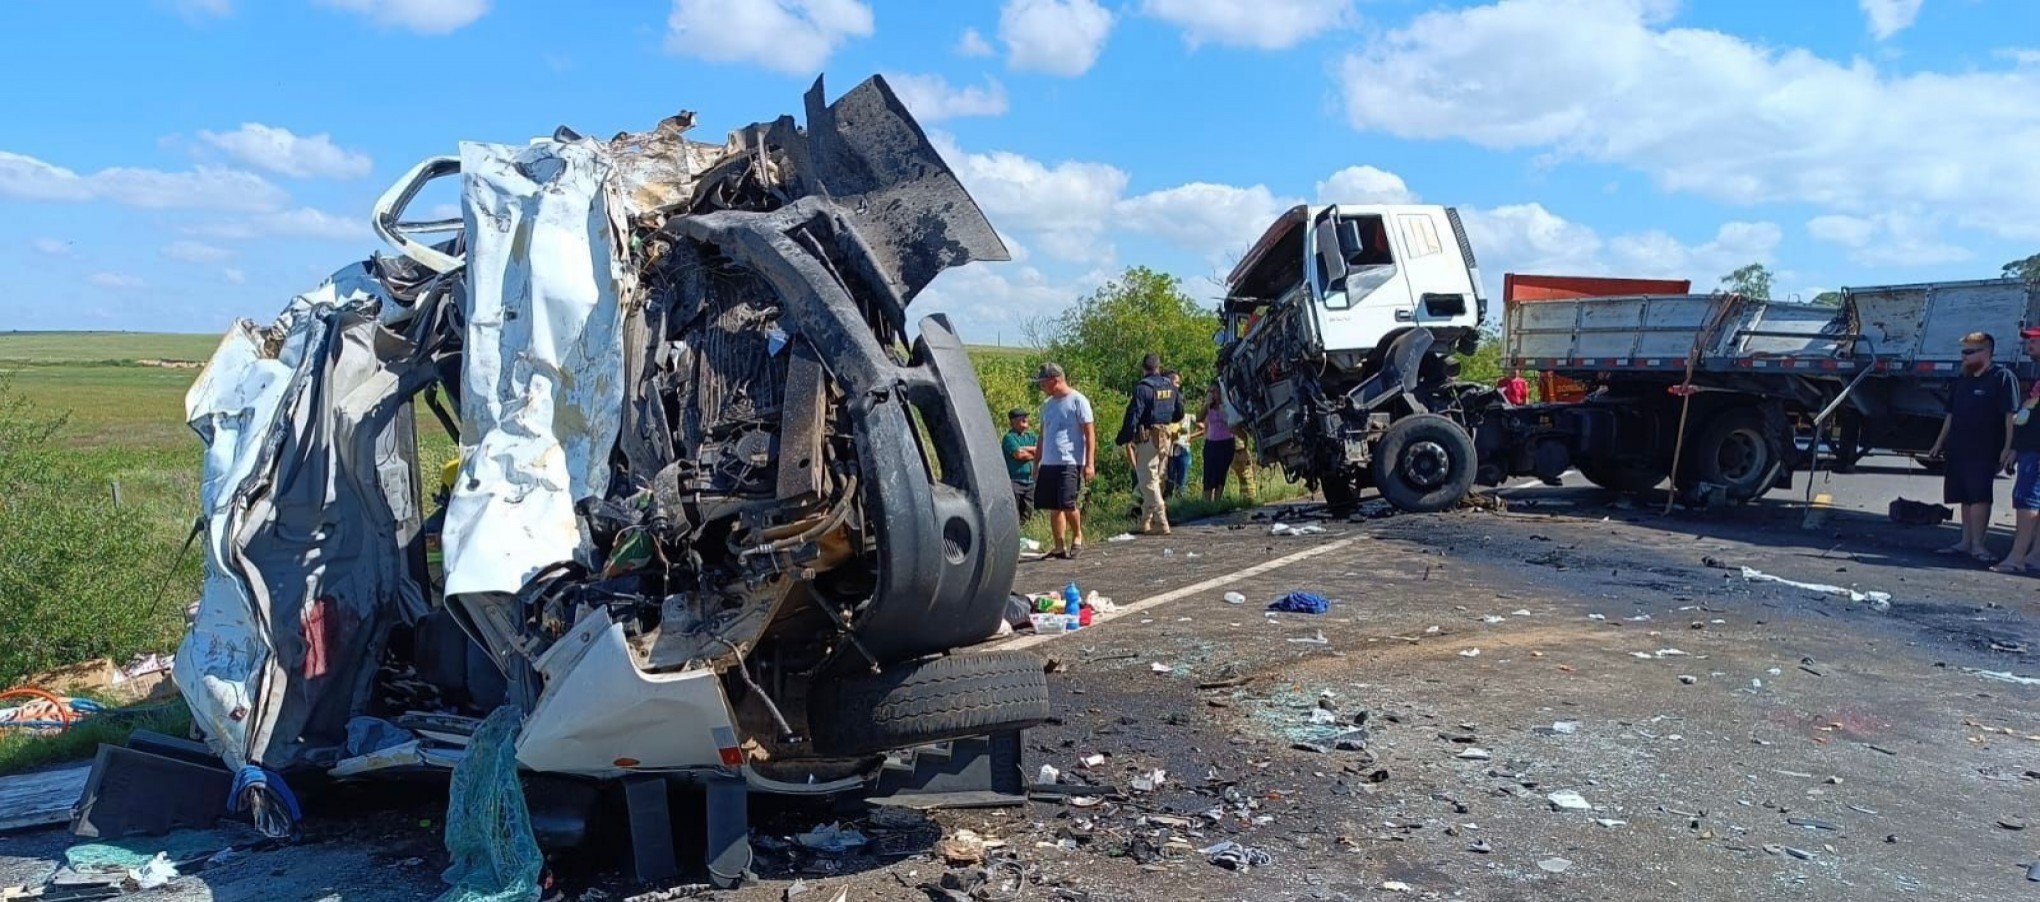 Quatro pessoas morrem em acidente com micro-ônibus da região metropolitana na fronteira com o Uruguai